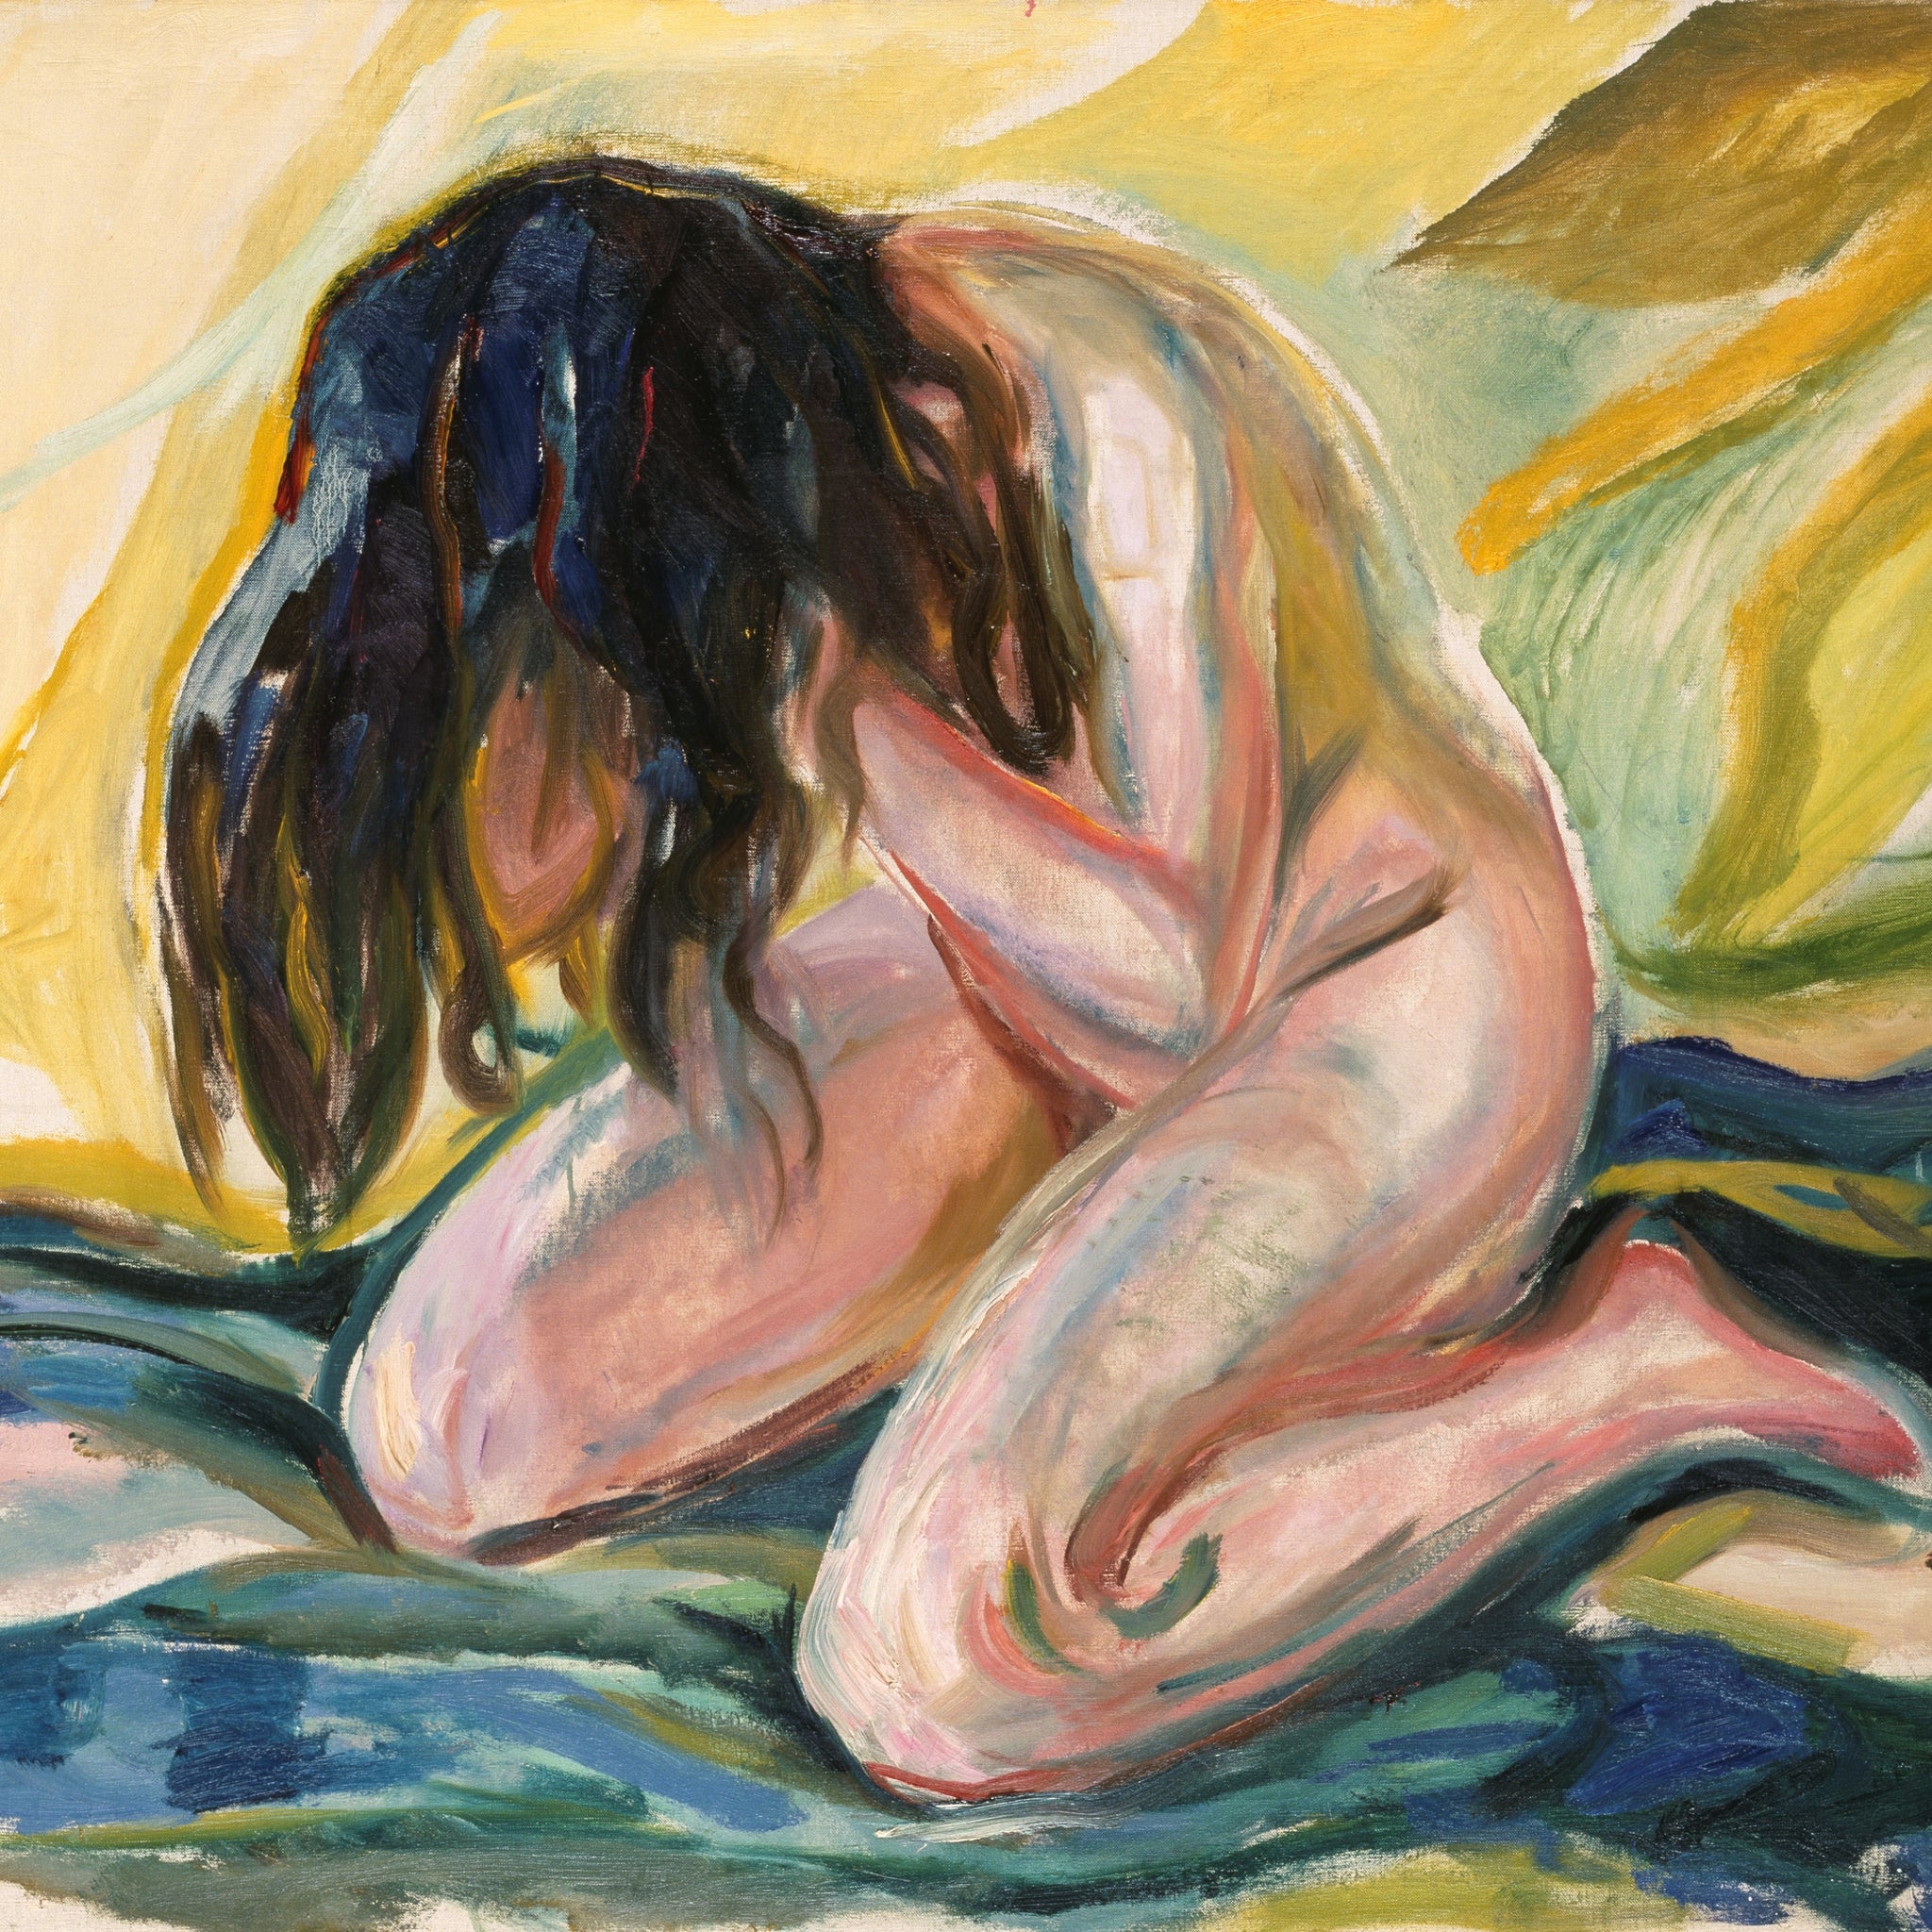 Femme nue à genoux - Edvard Munch